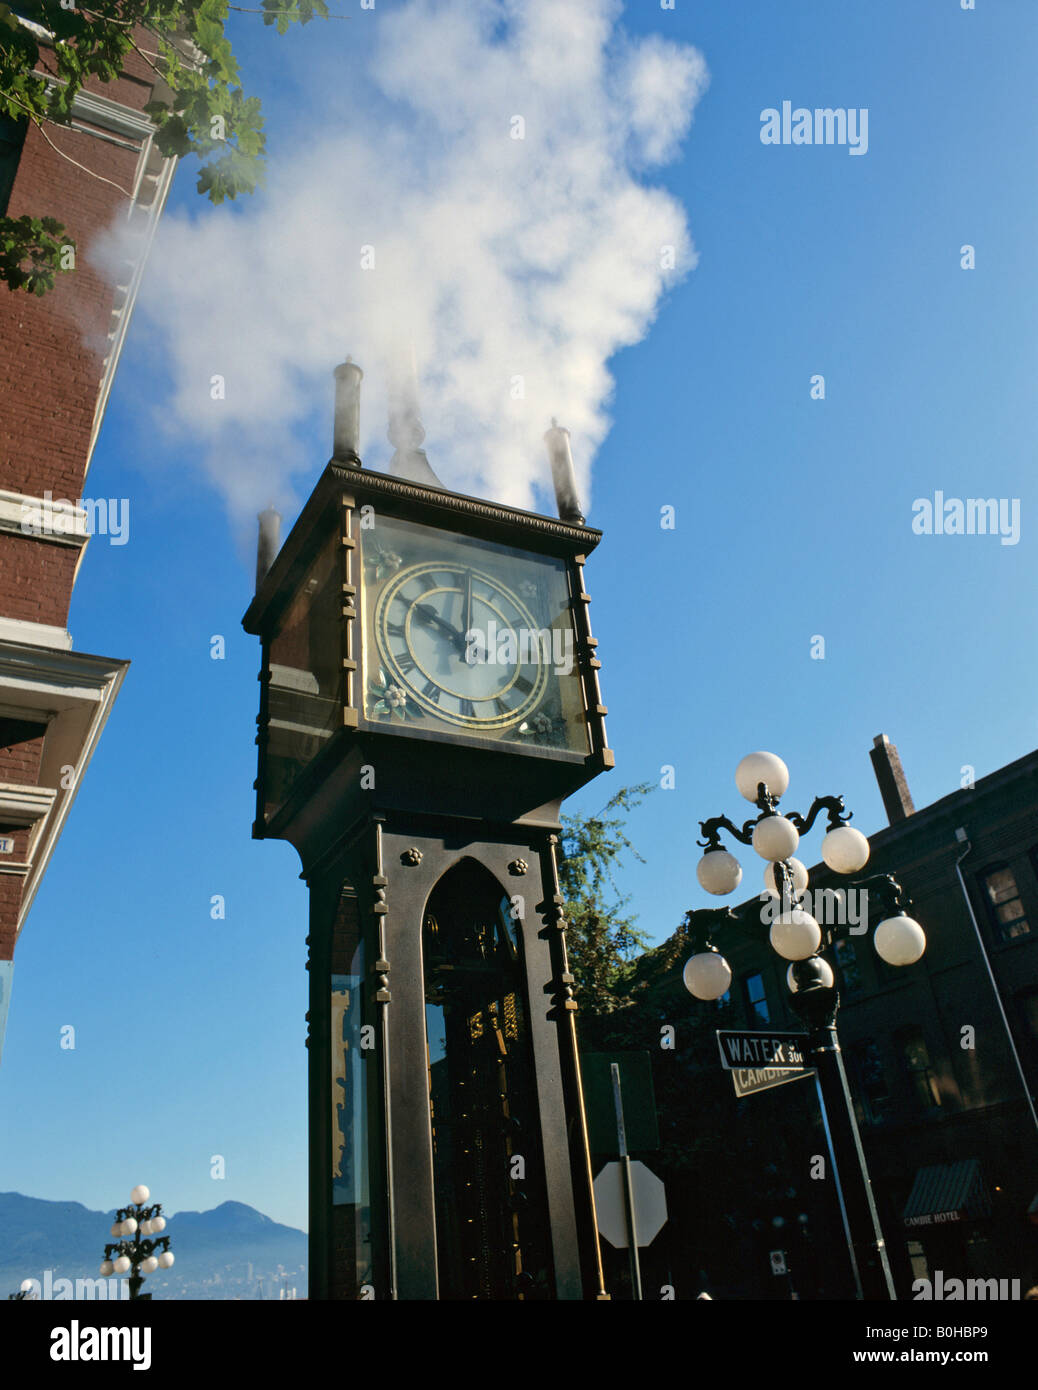 Reloj de vapor en el distrito de Gastown, Vancouver, British Columbia, Canadá Foto de stock